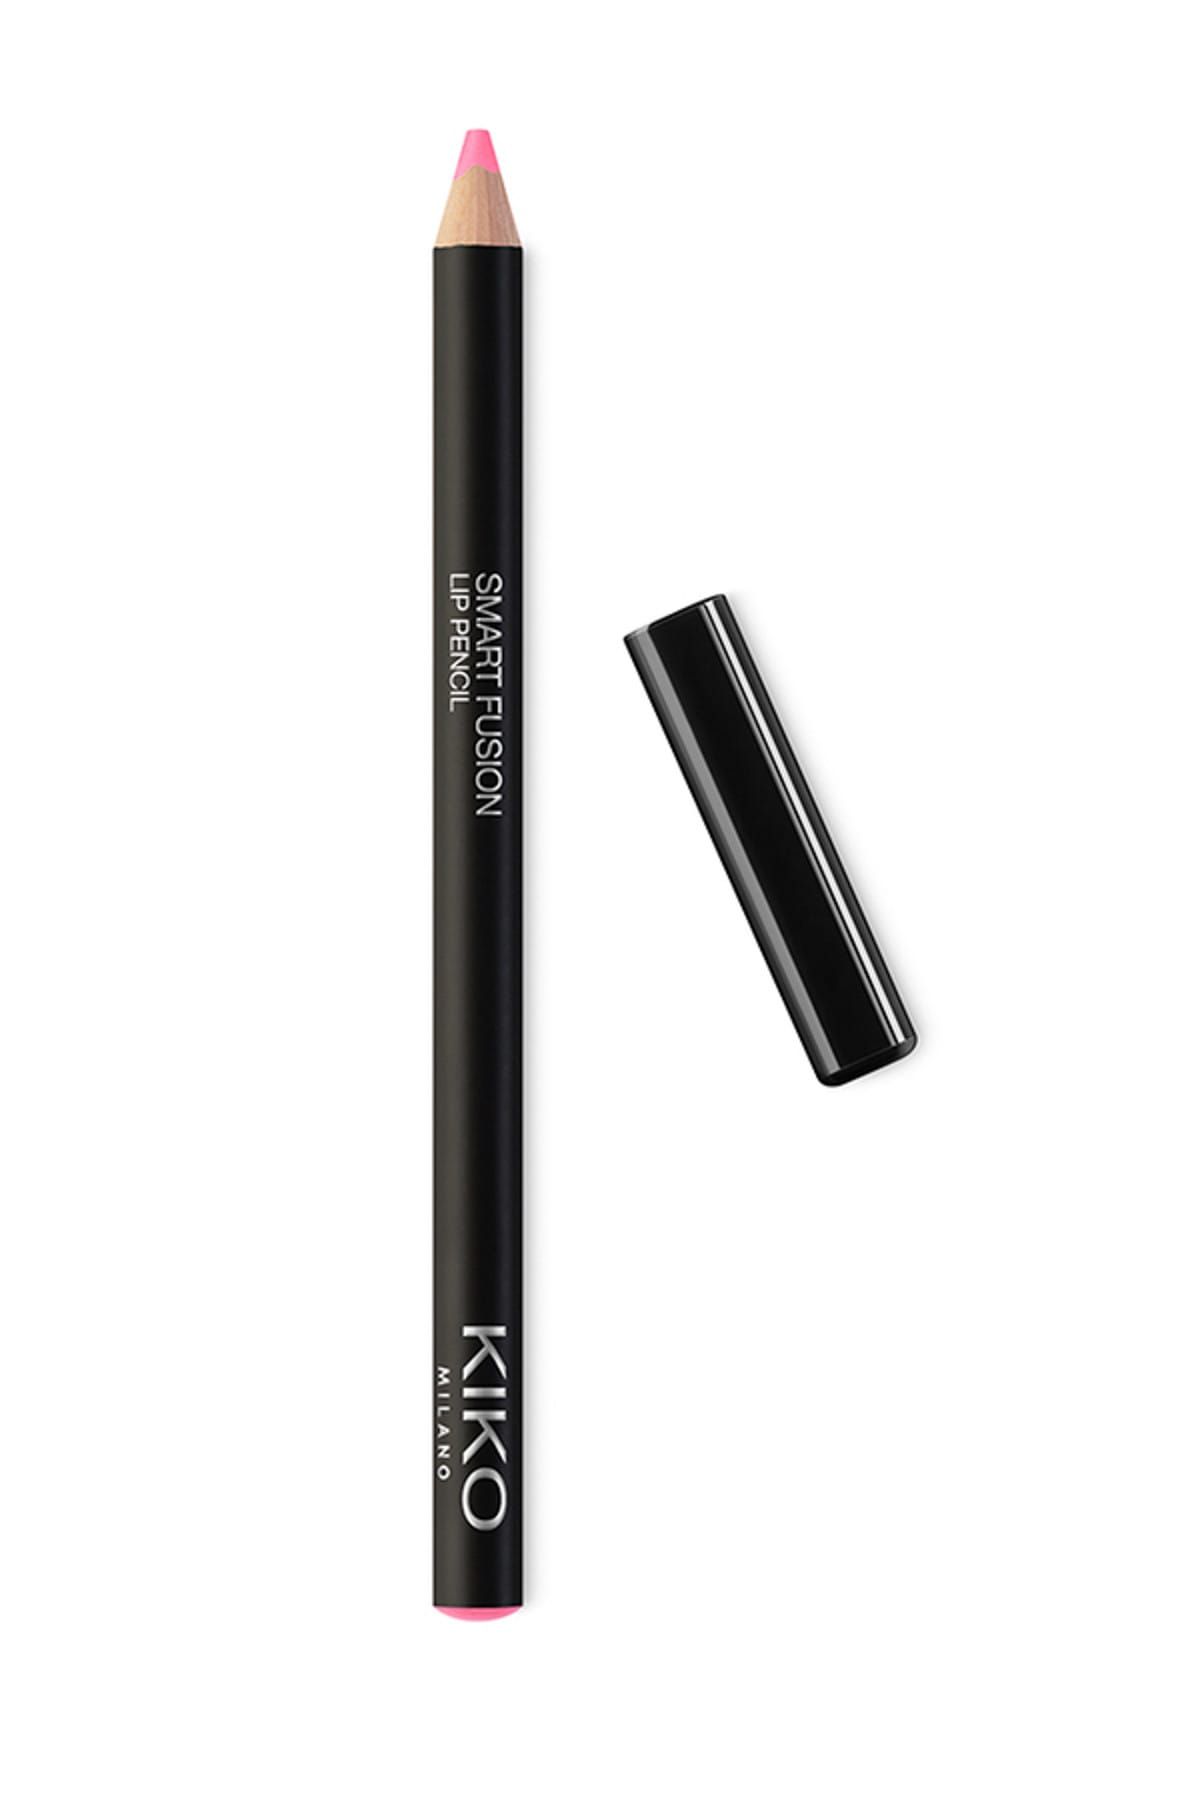 KIKO مداد لب Smart Fusion بافت نرم و روان شماره 519 رنگ صورتی بیبی